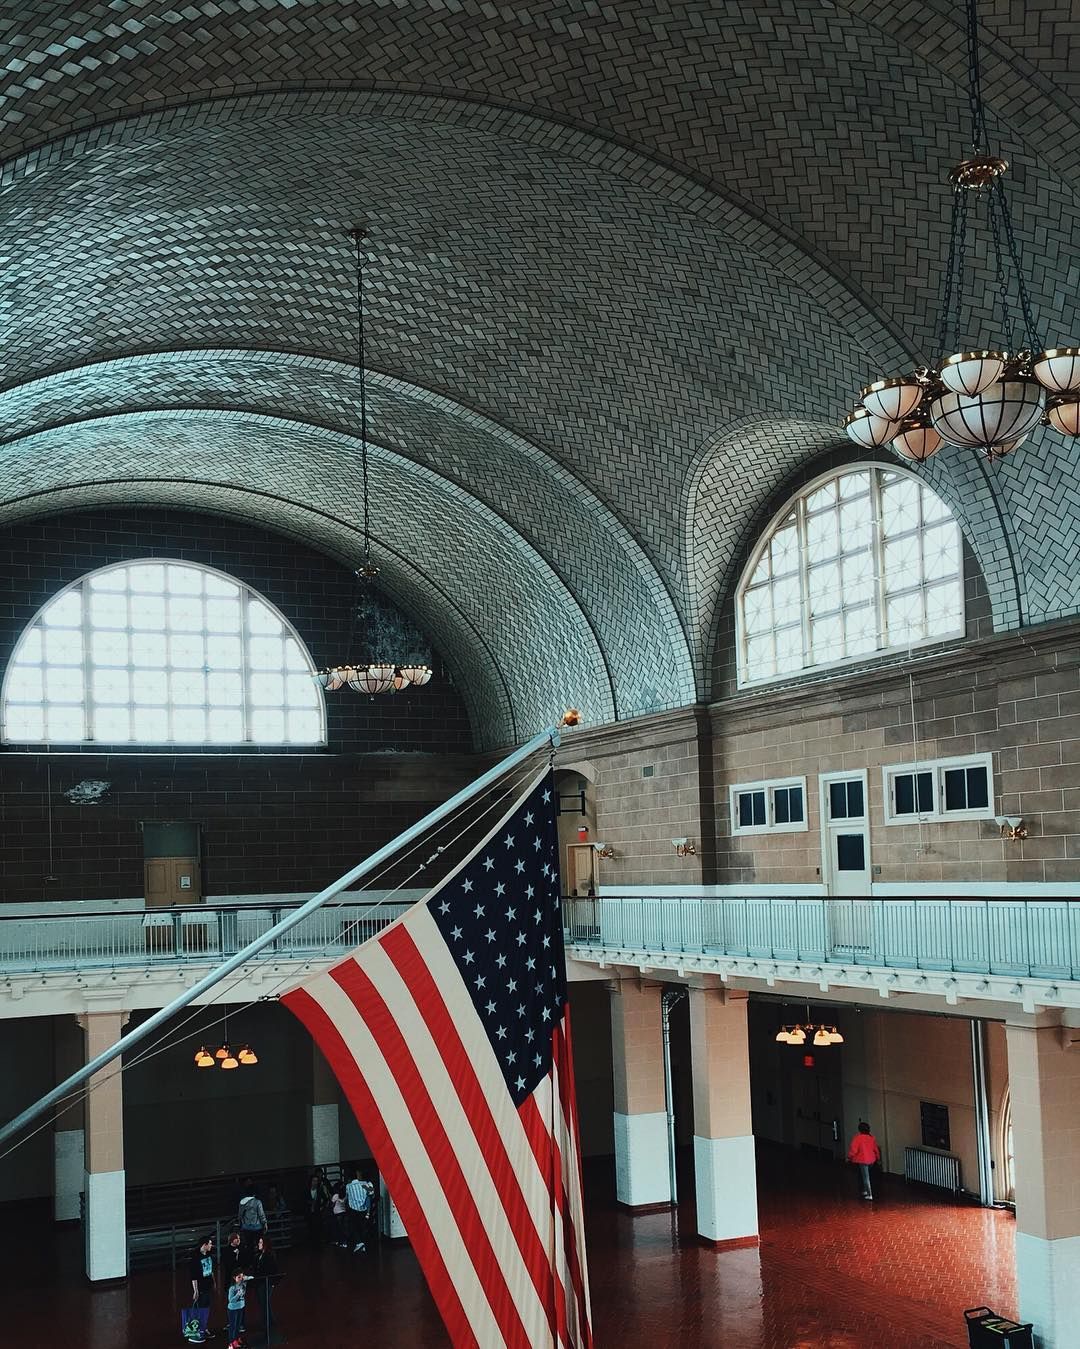 The Immigration hall on Ellis Island